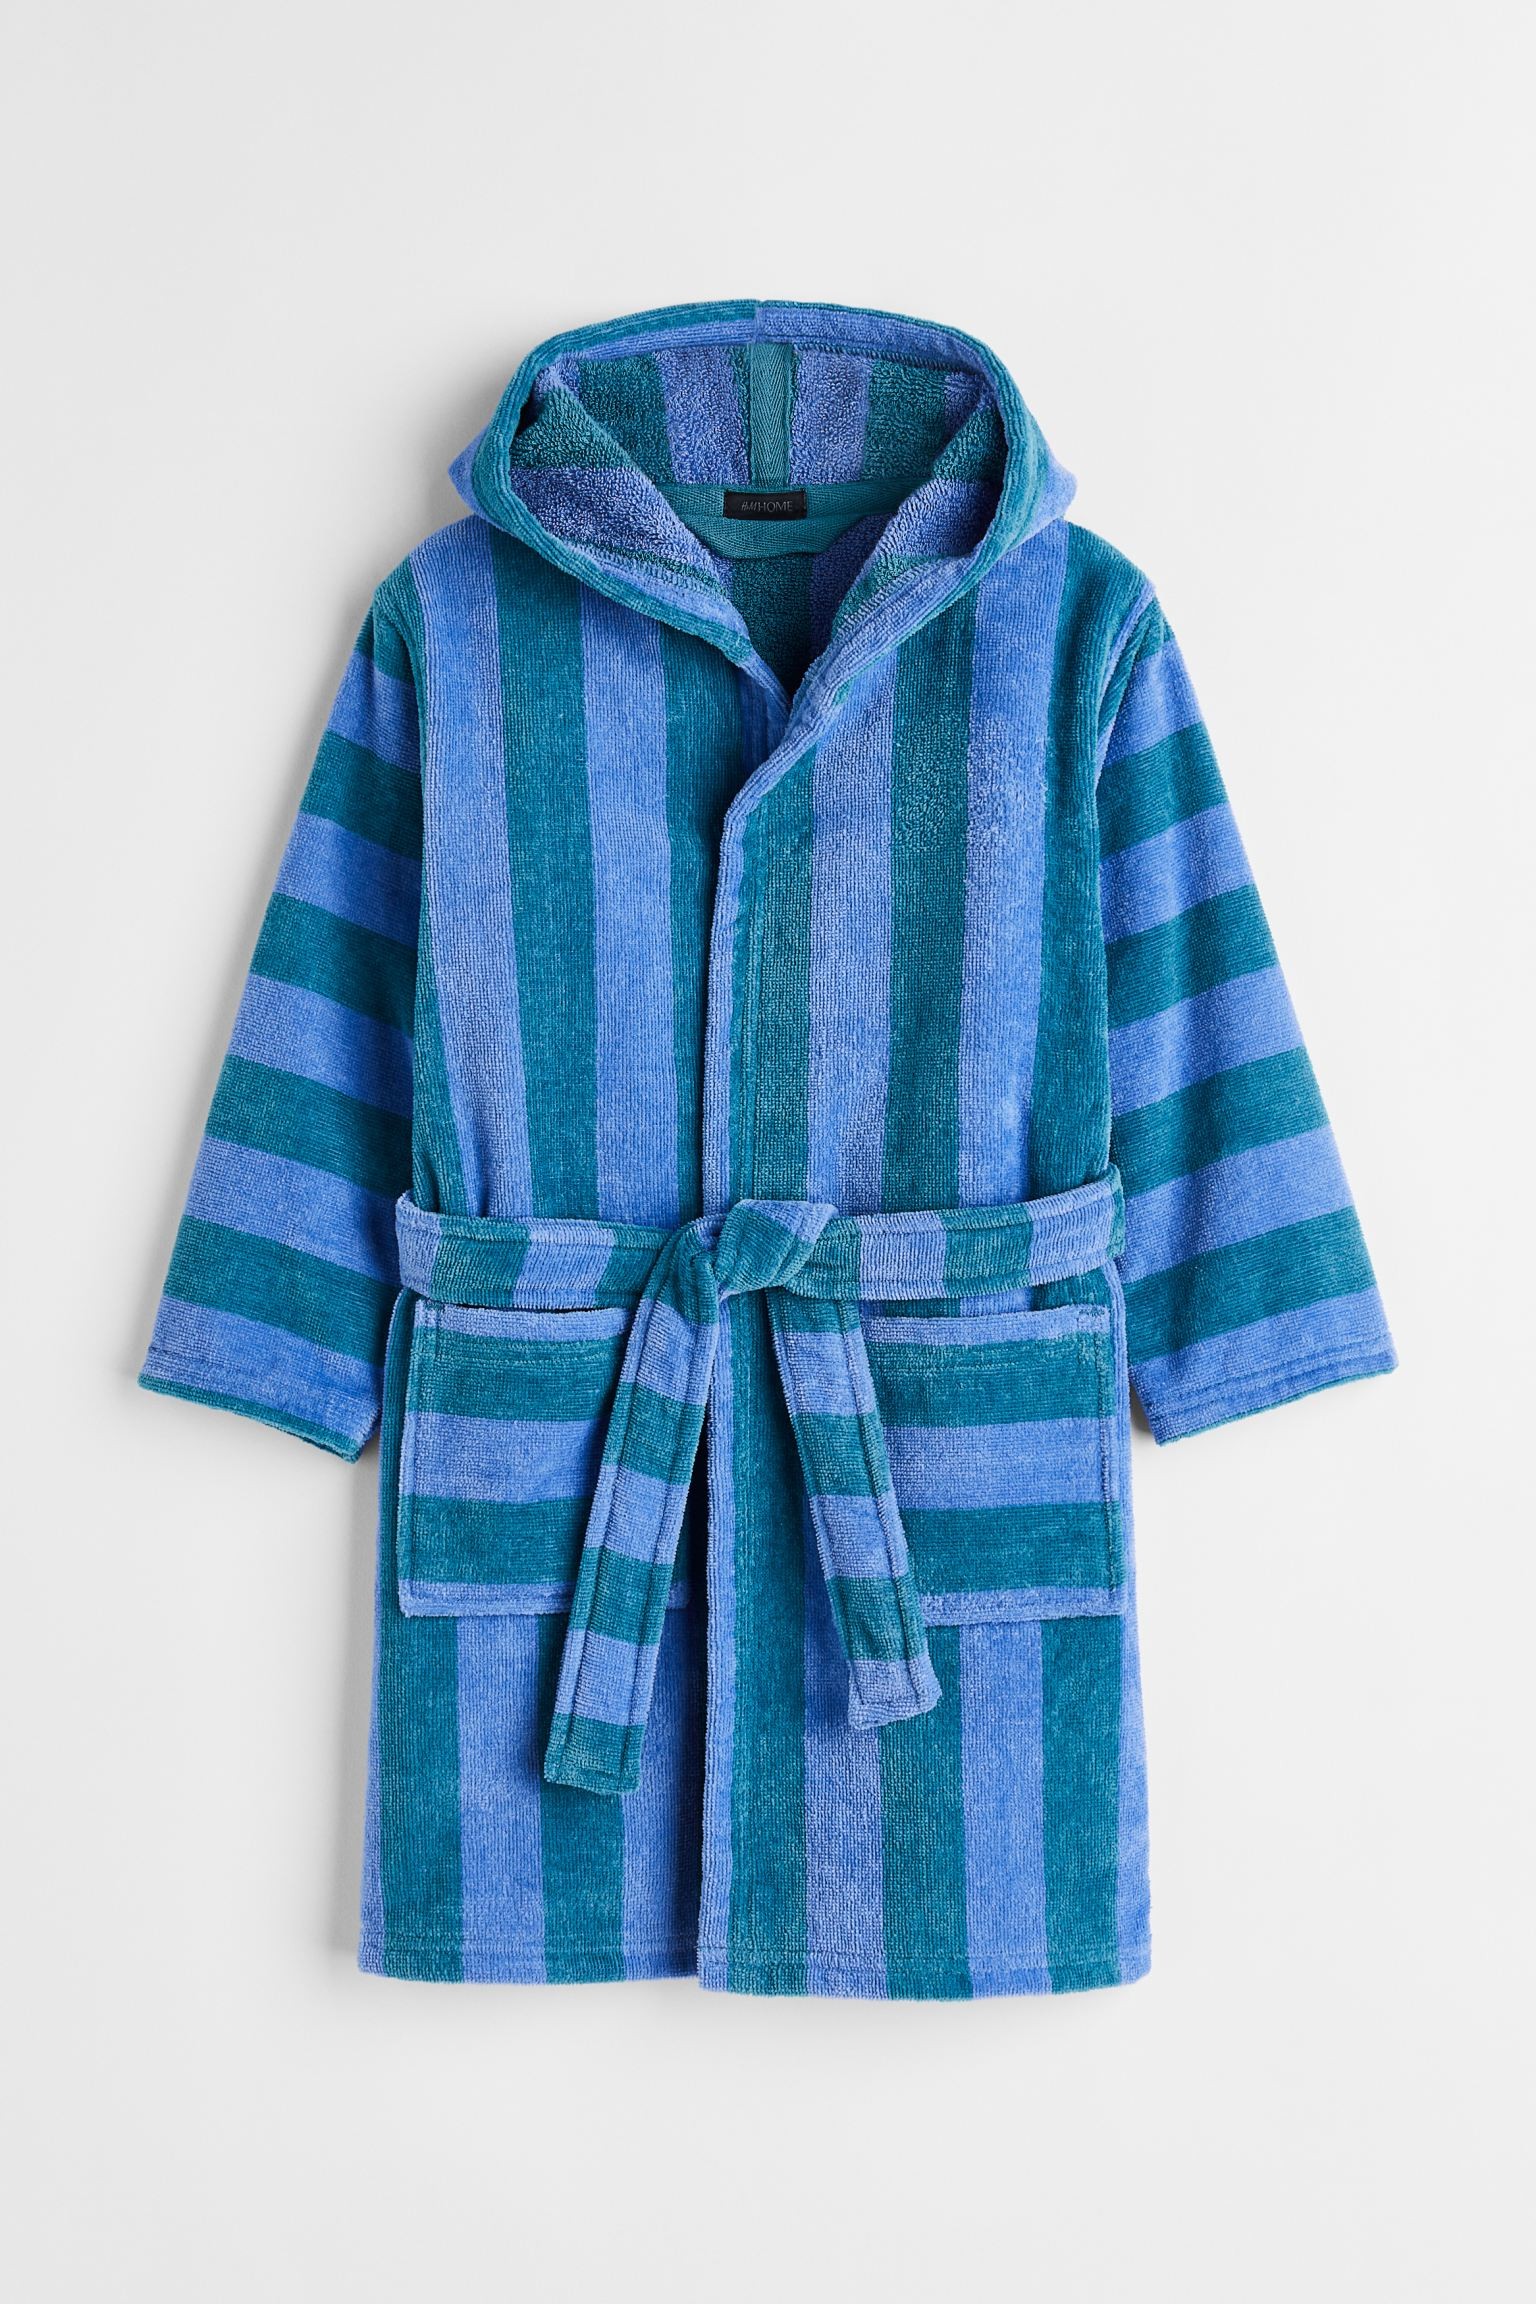 H&M Home Махровый халат в полоски, Синие/бирюзовые полосы, 98/104 (2-4Y) 1106018002 | 1106018002